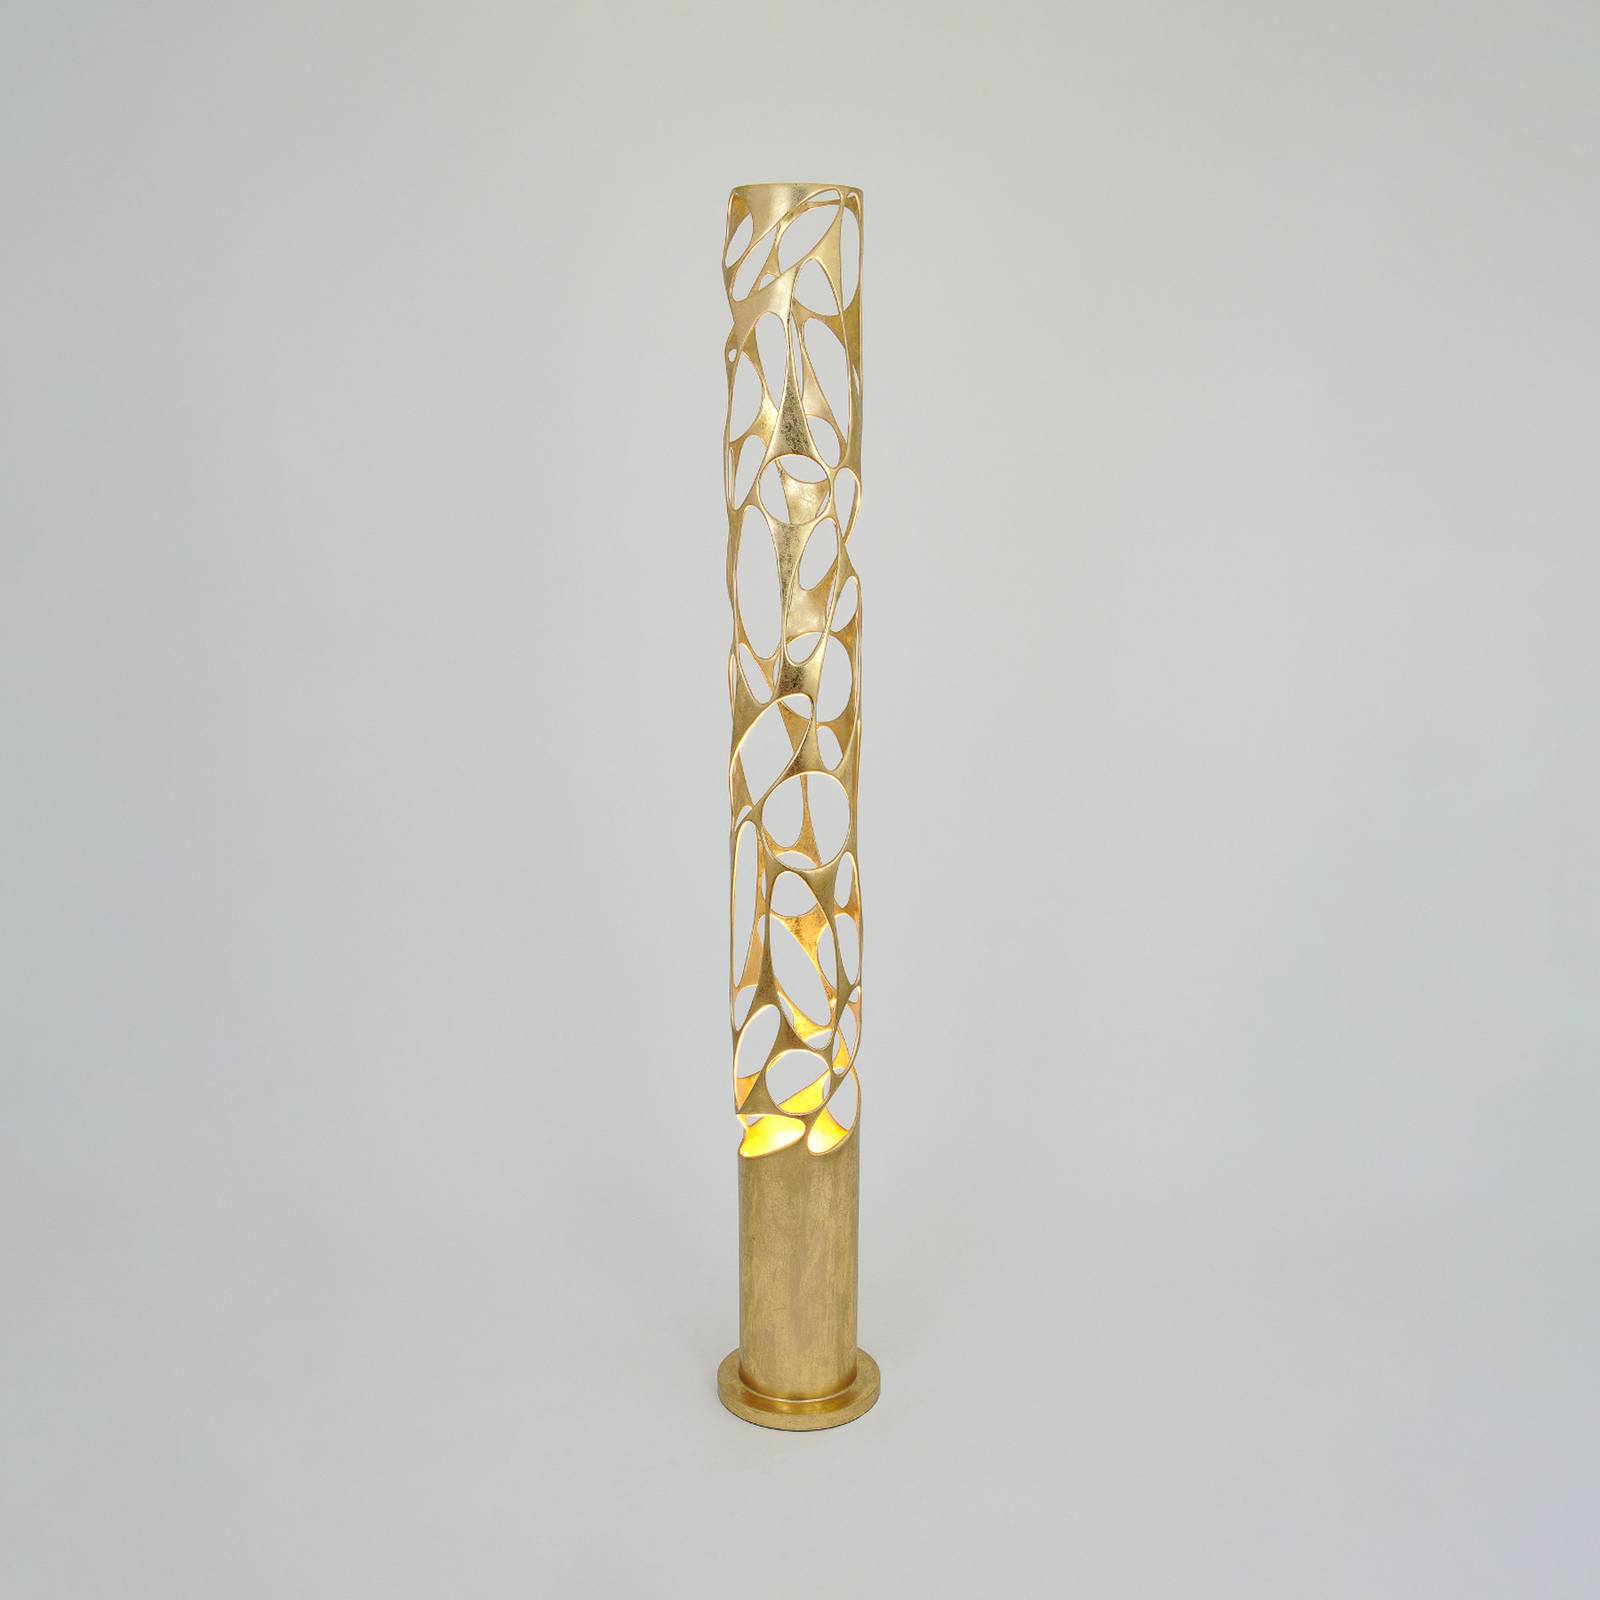 Holländer talismano állólámpa, arany színű, 176 cm magas, vasból készült